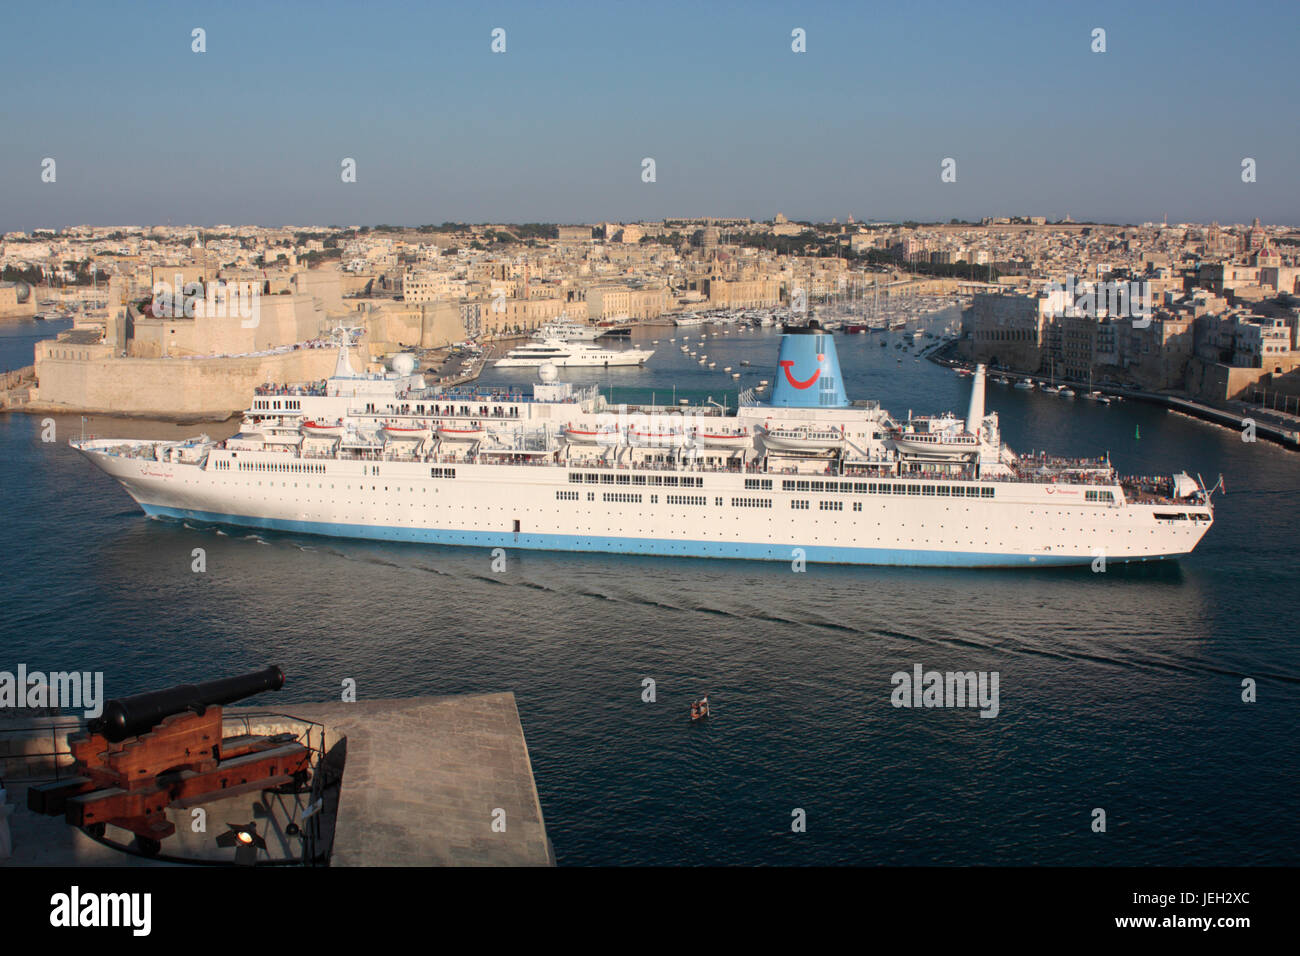 Das kreuzfahrtschiff oder liner Thomson Spirit Auslaufen aus Malta Grand Harbour. Urlaub Reisen in das Mittelmeer. Stockfoto